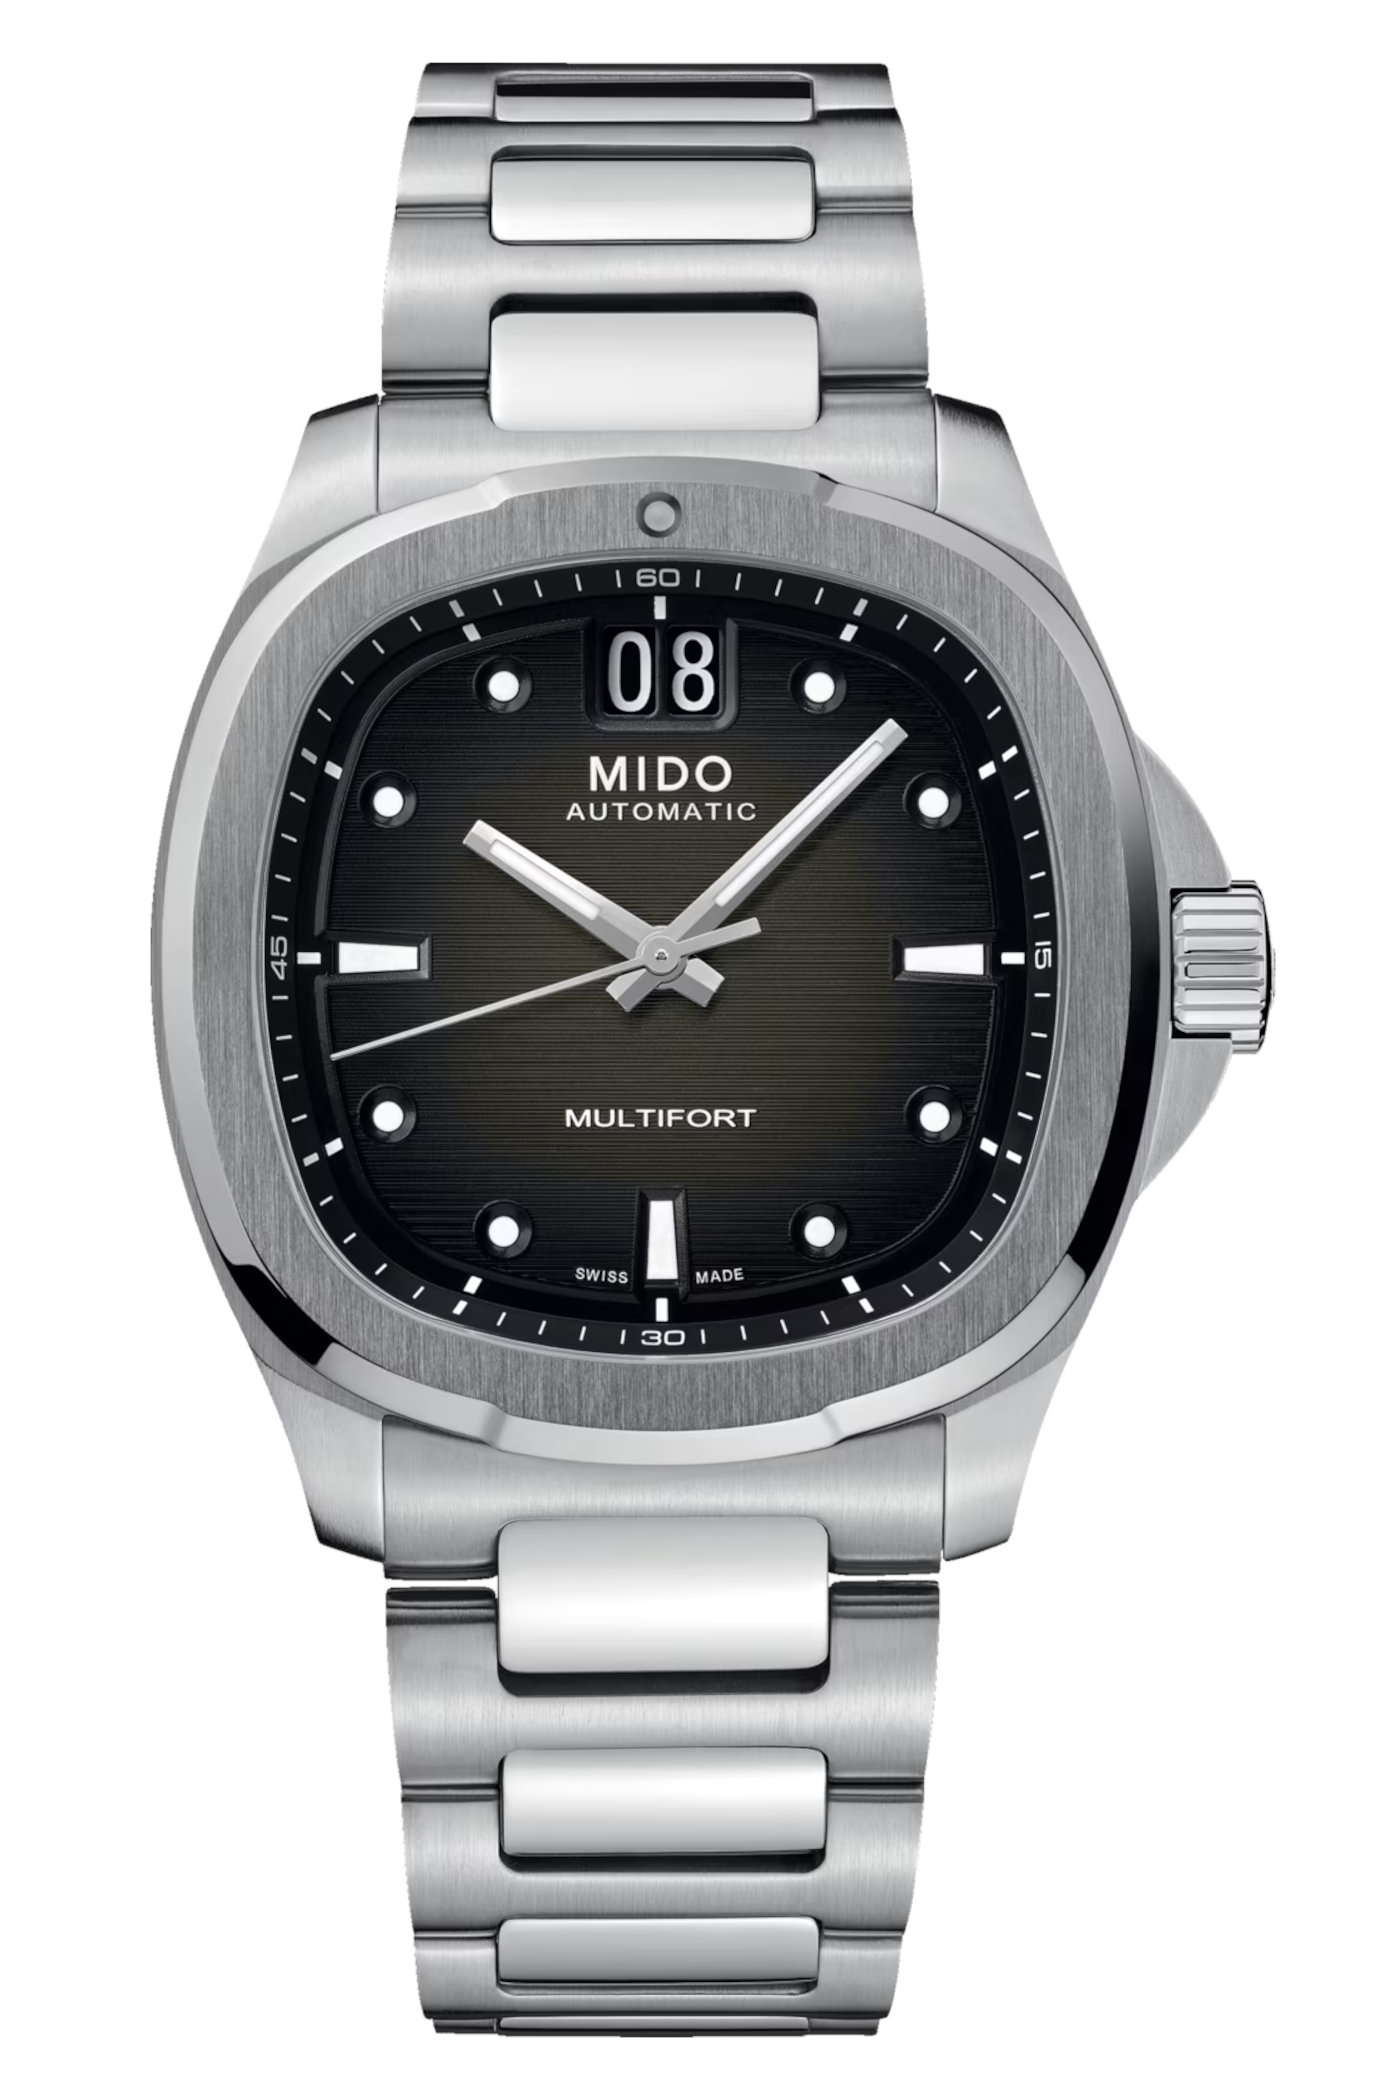 Mido Multifort TV Big Date - black gradient dial - steel bracelet